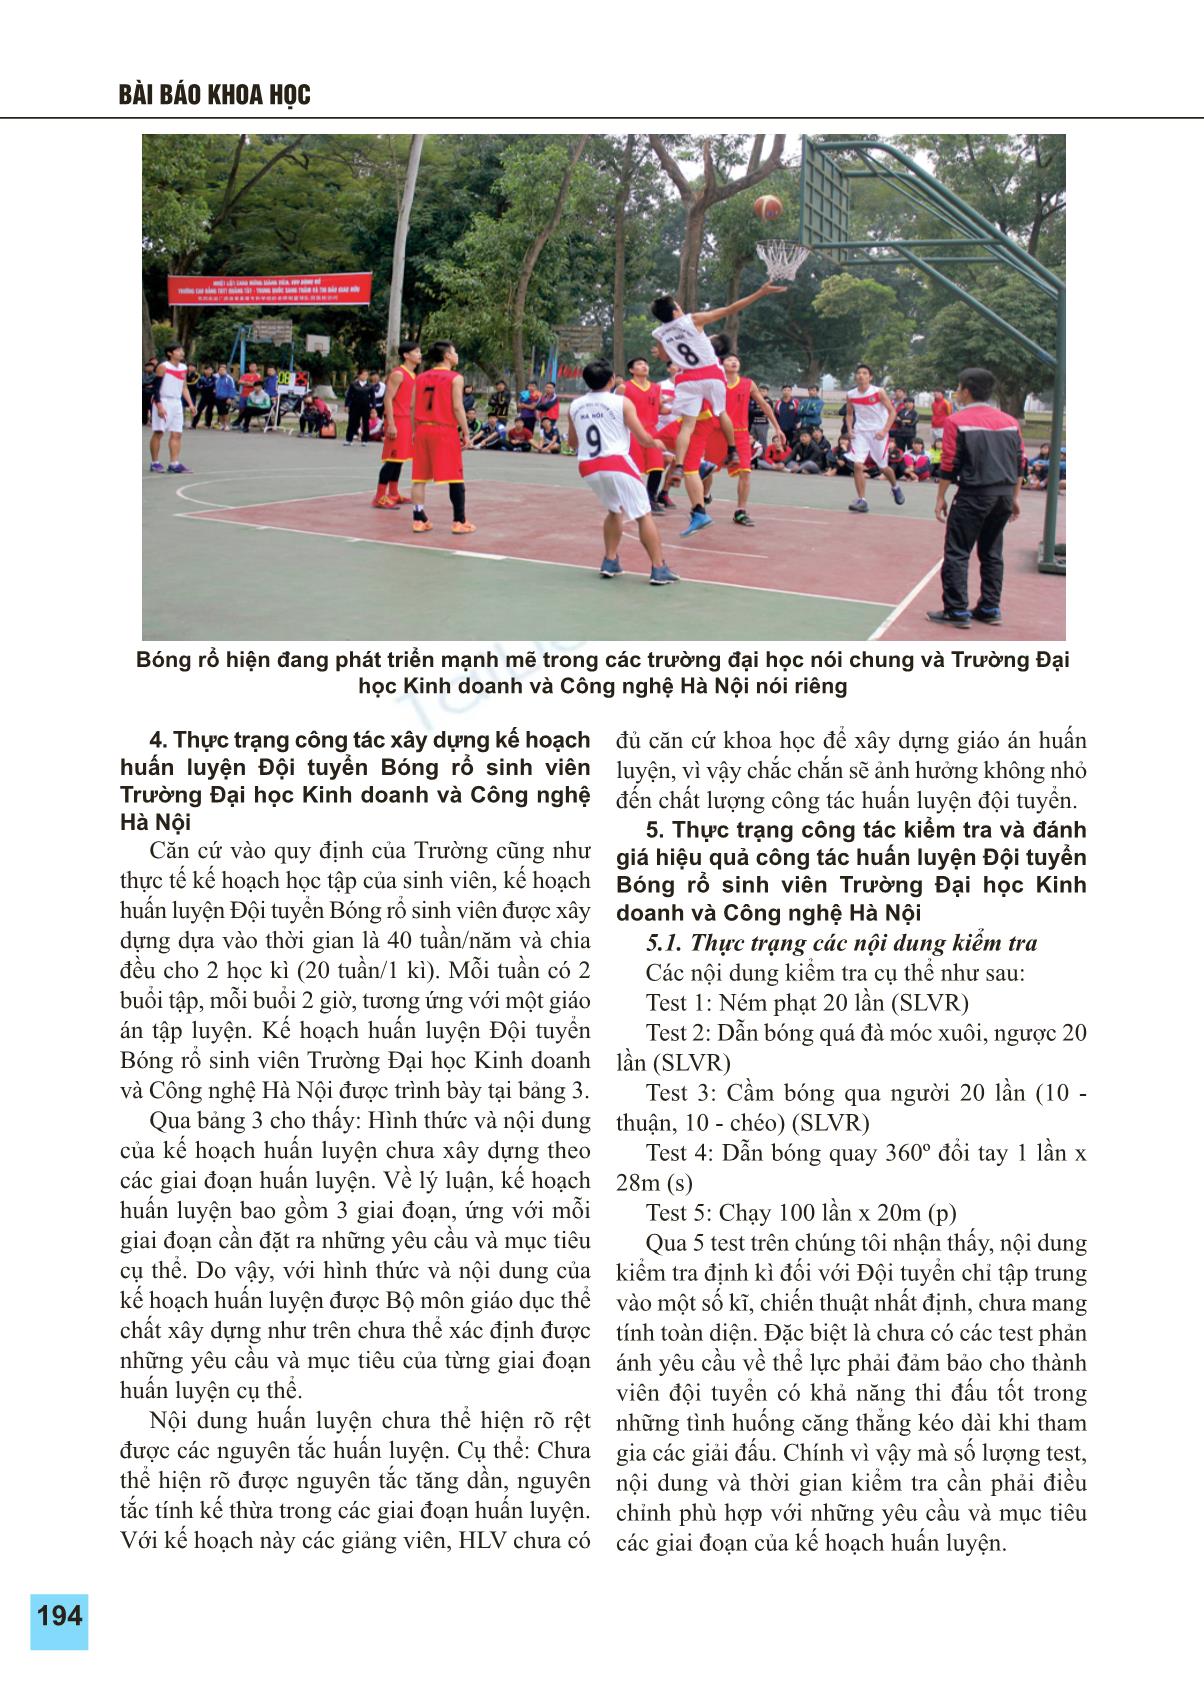 Thực trạng các yếu tố ảnh hưởng tới công tác huấn luyện đội tuyển bóng rổ sinh viên trường Đại học Kinh doanh và công nghệ Hà Nội trang 3